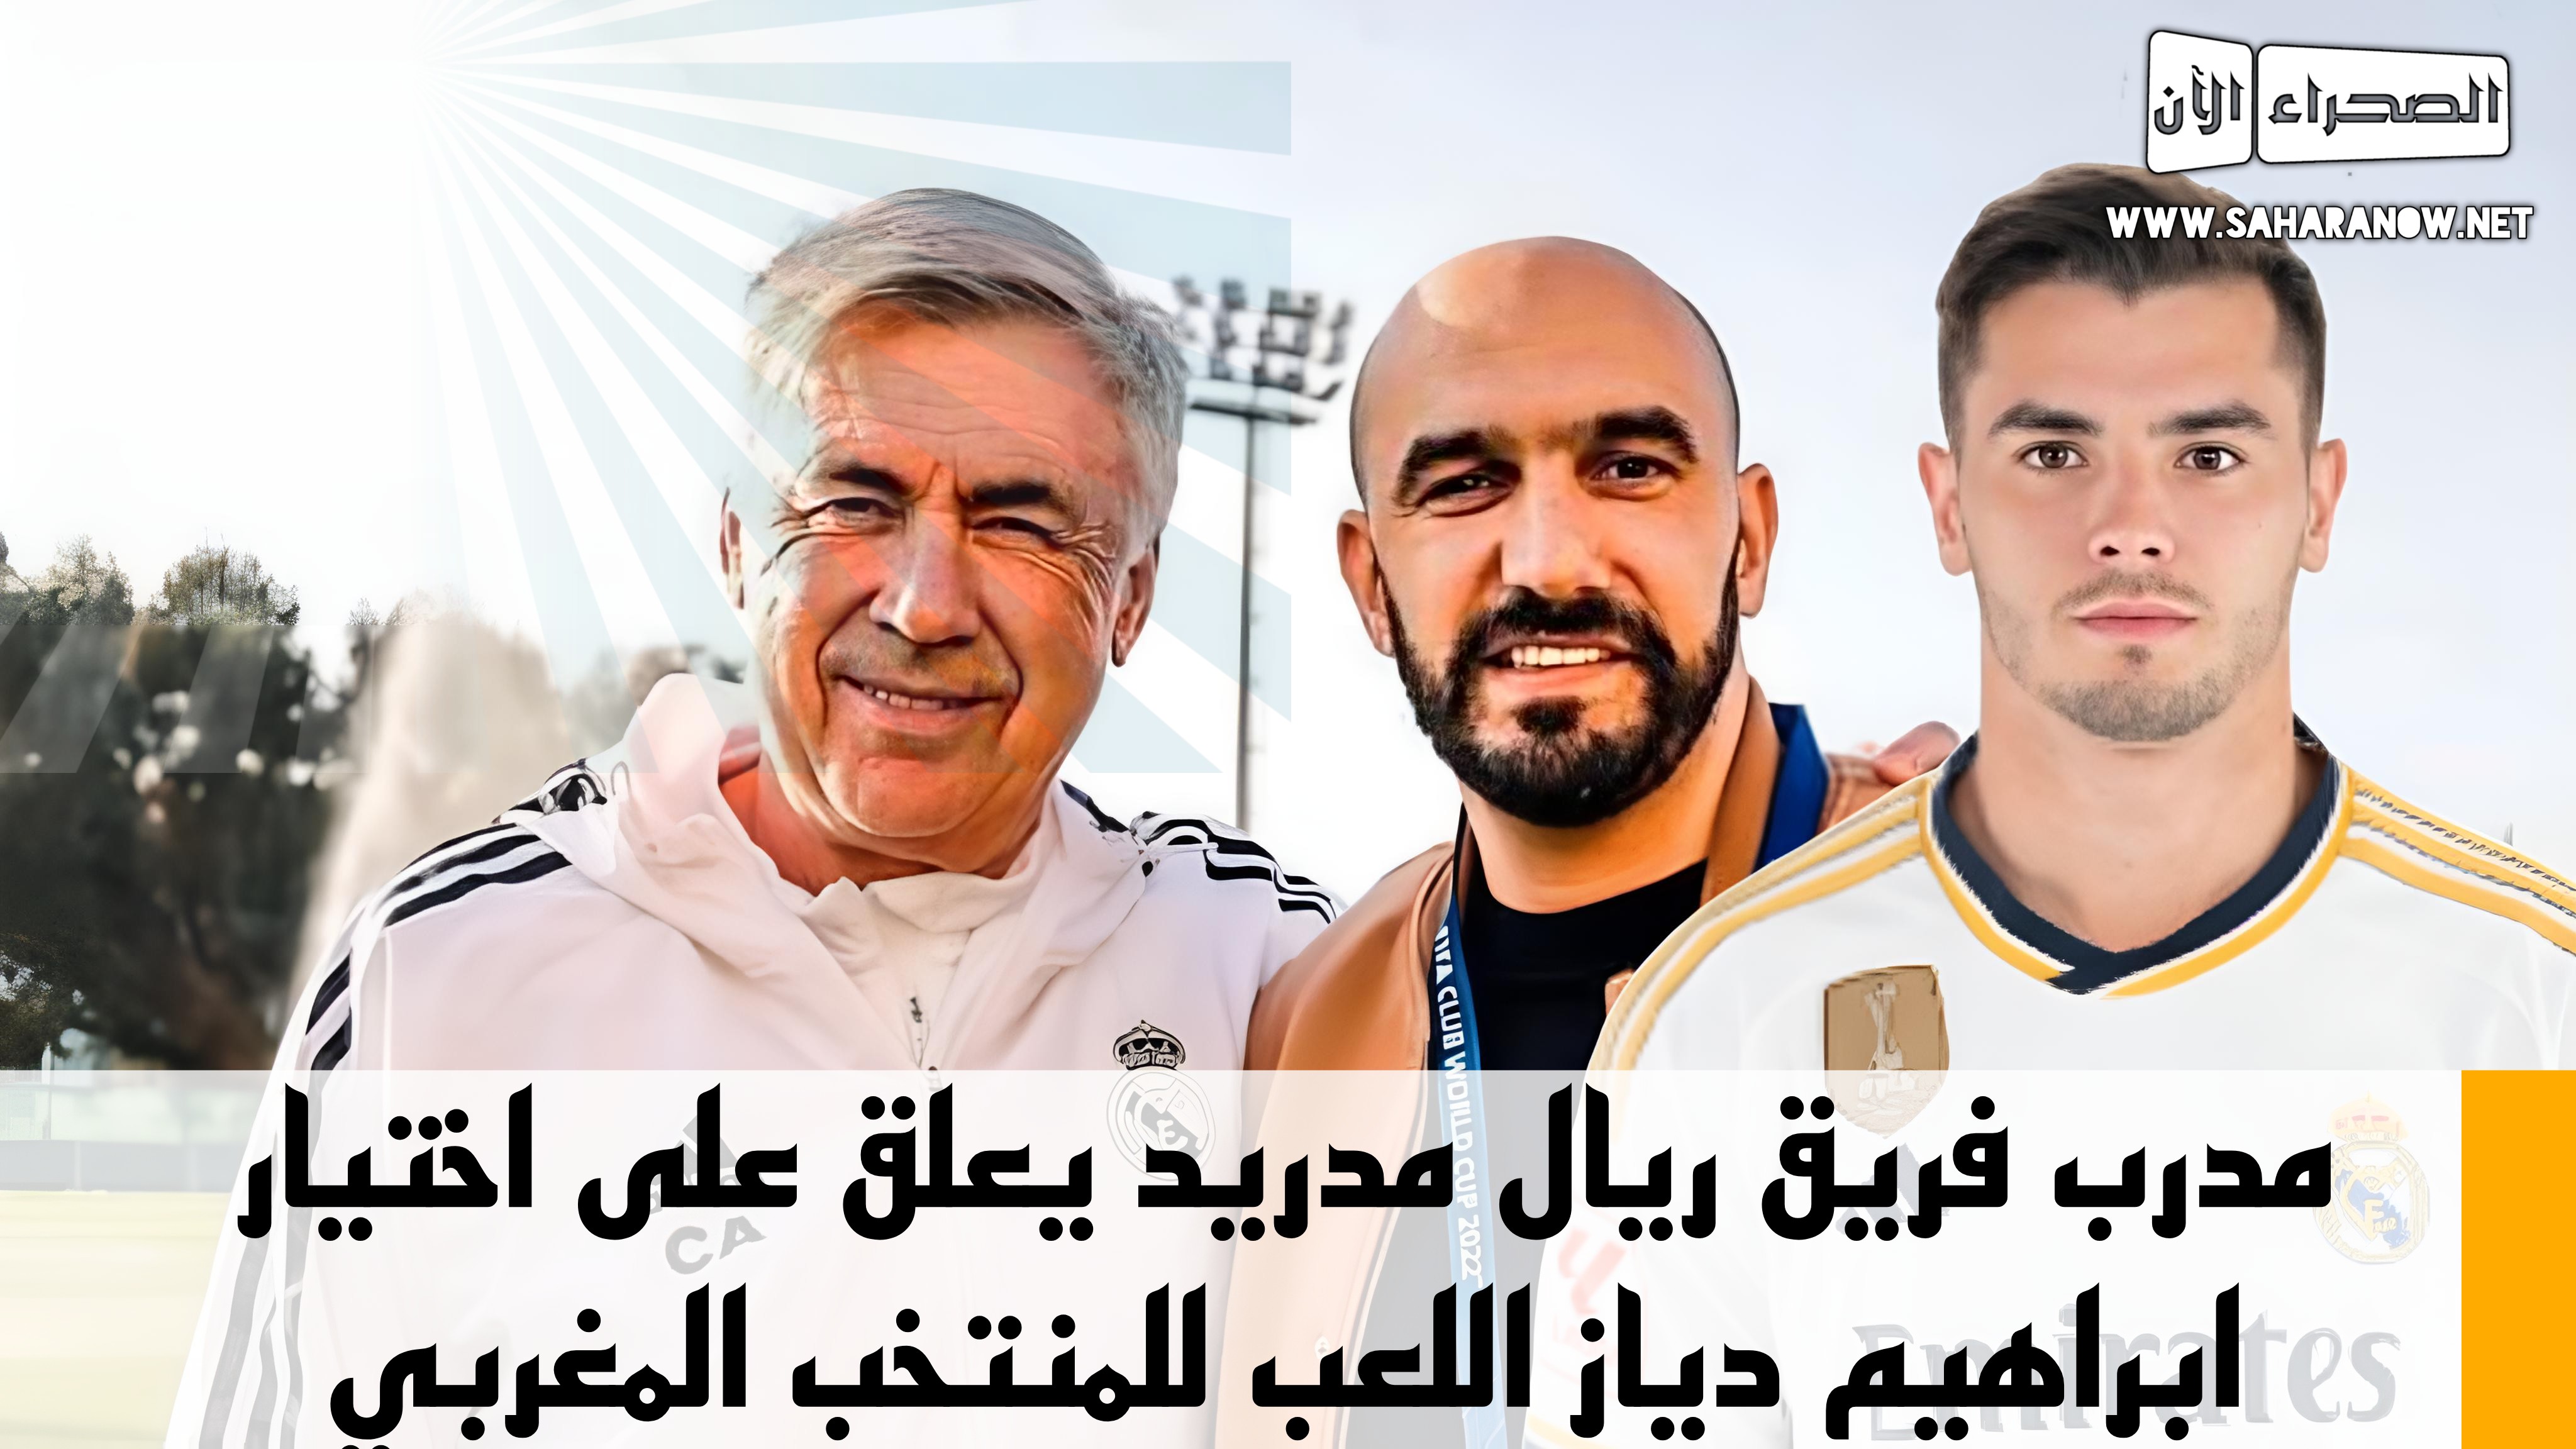  مدرب فريق ريال مدريد يعلق على اختيار ابراهيم اللعب للمنتخب المغربي 